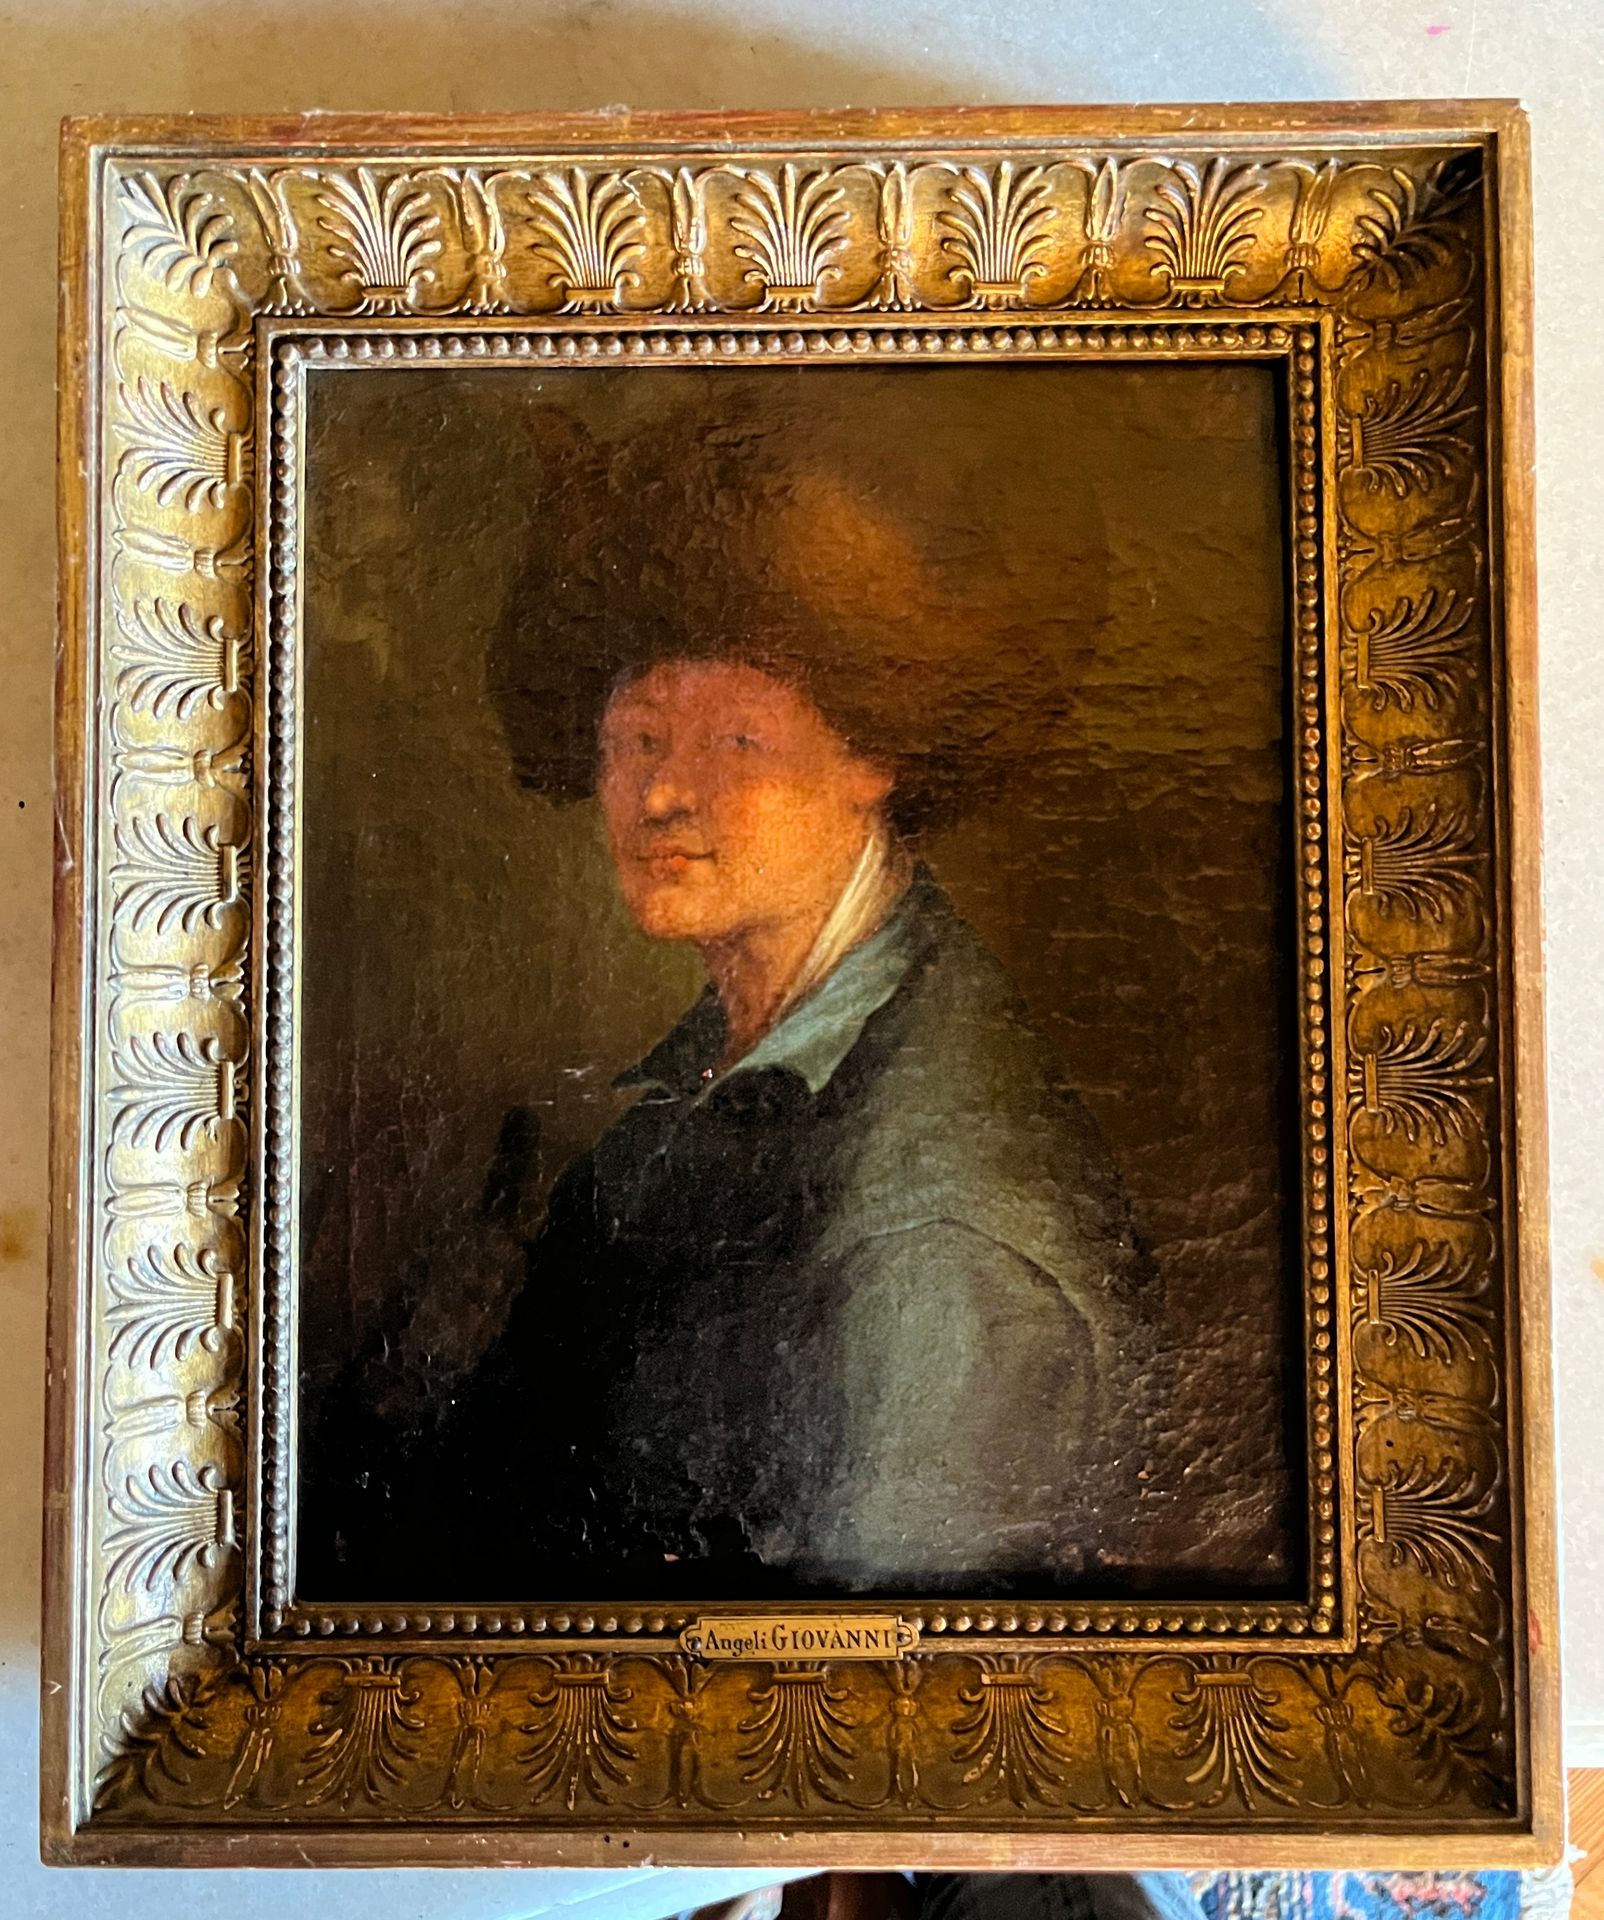 Null 65 Angeli GIOVANNI (?)

Retrato de un hombre con sombrero

Óleo sobre lienz&hellip;